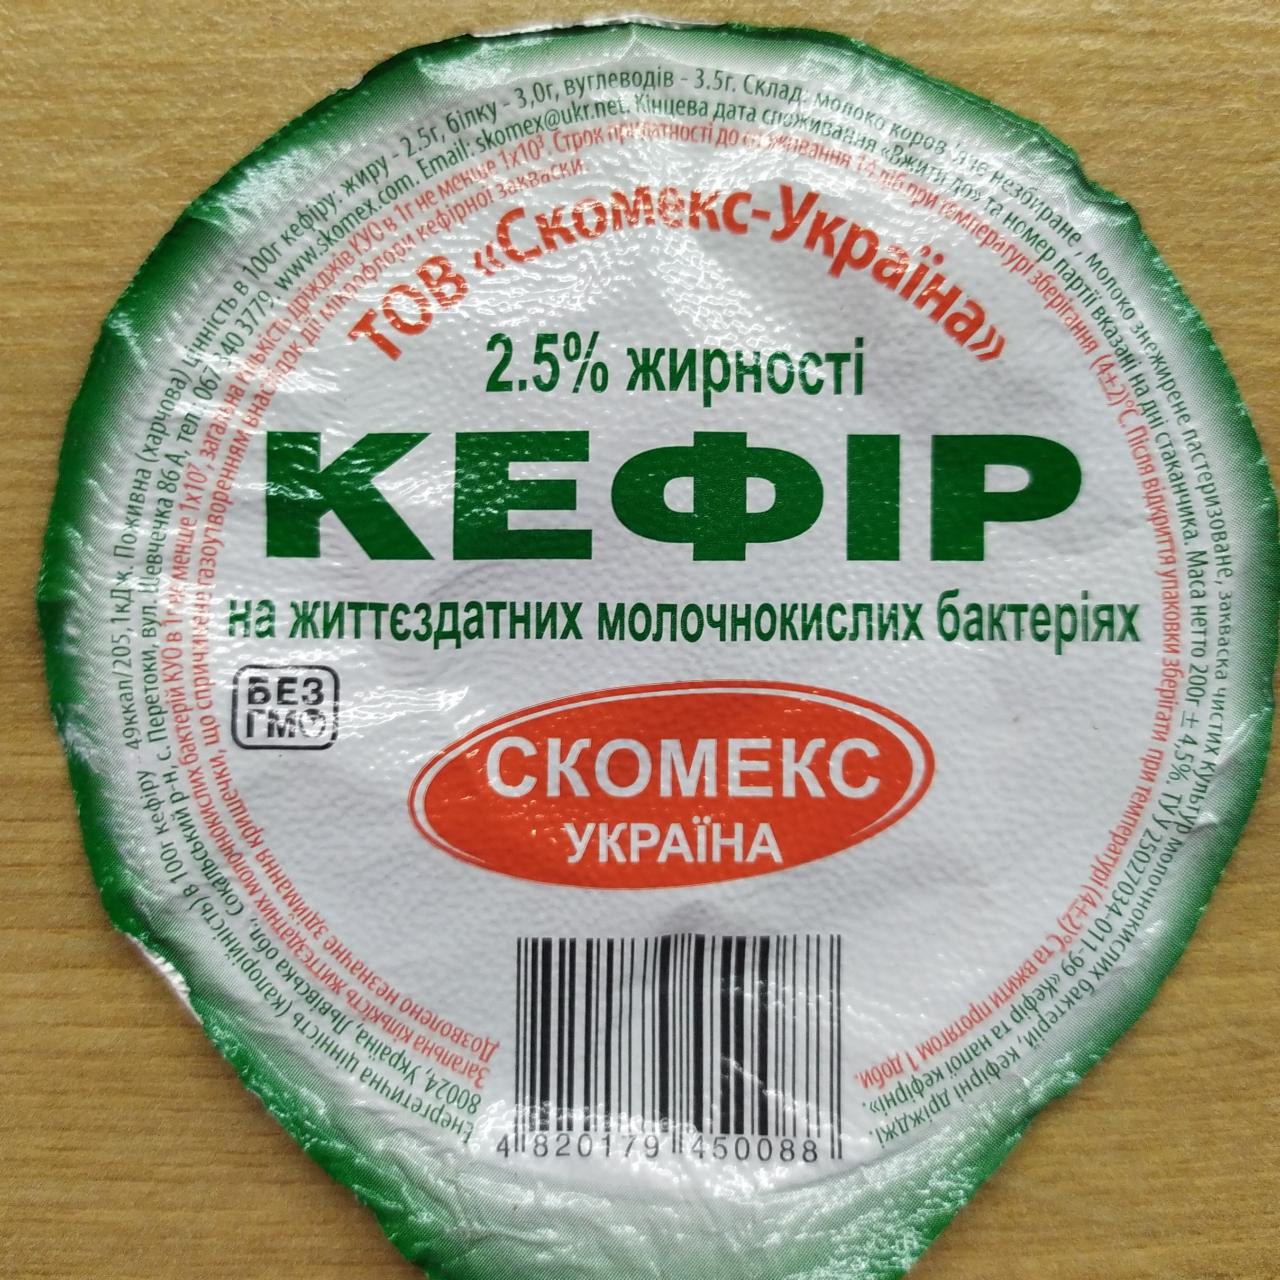 Фото - Кефир 2.5% Скомекс-Украина